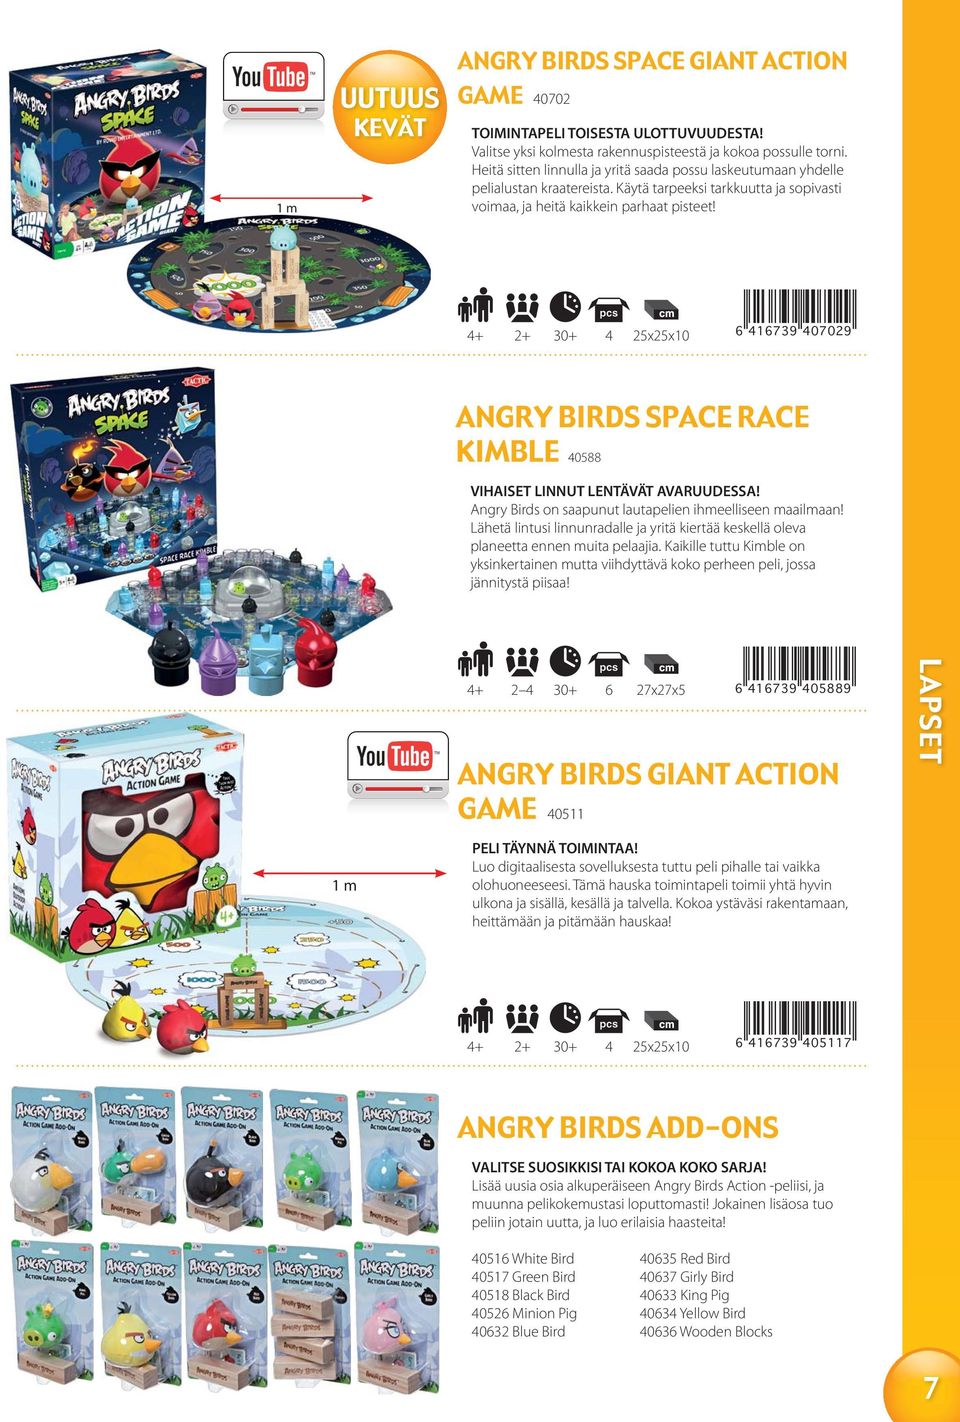 4+ 2+ 30+ 4 6 416739 407029 ANGRY BIRDS SPACE RACE KIMBLE 40588 VIHAISET LINNUT LENTÄVÄT AVARUUDESSA! Angry Birds on saapunut lautapelien ihmeelliseen maailmaan!